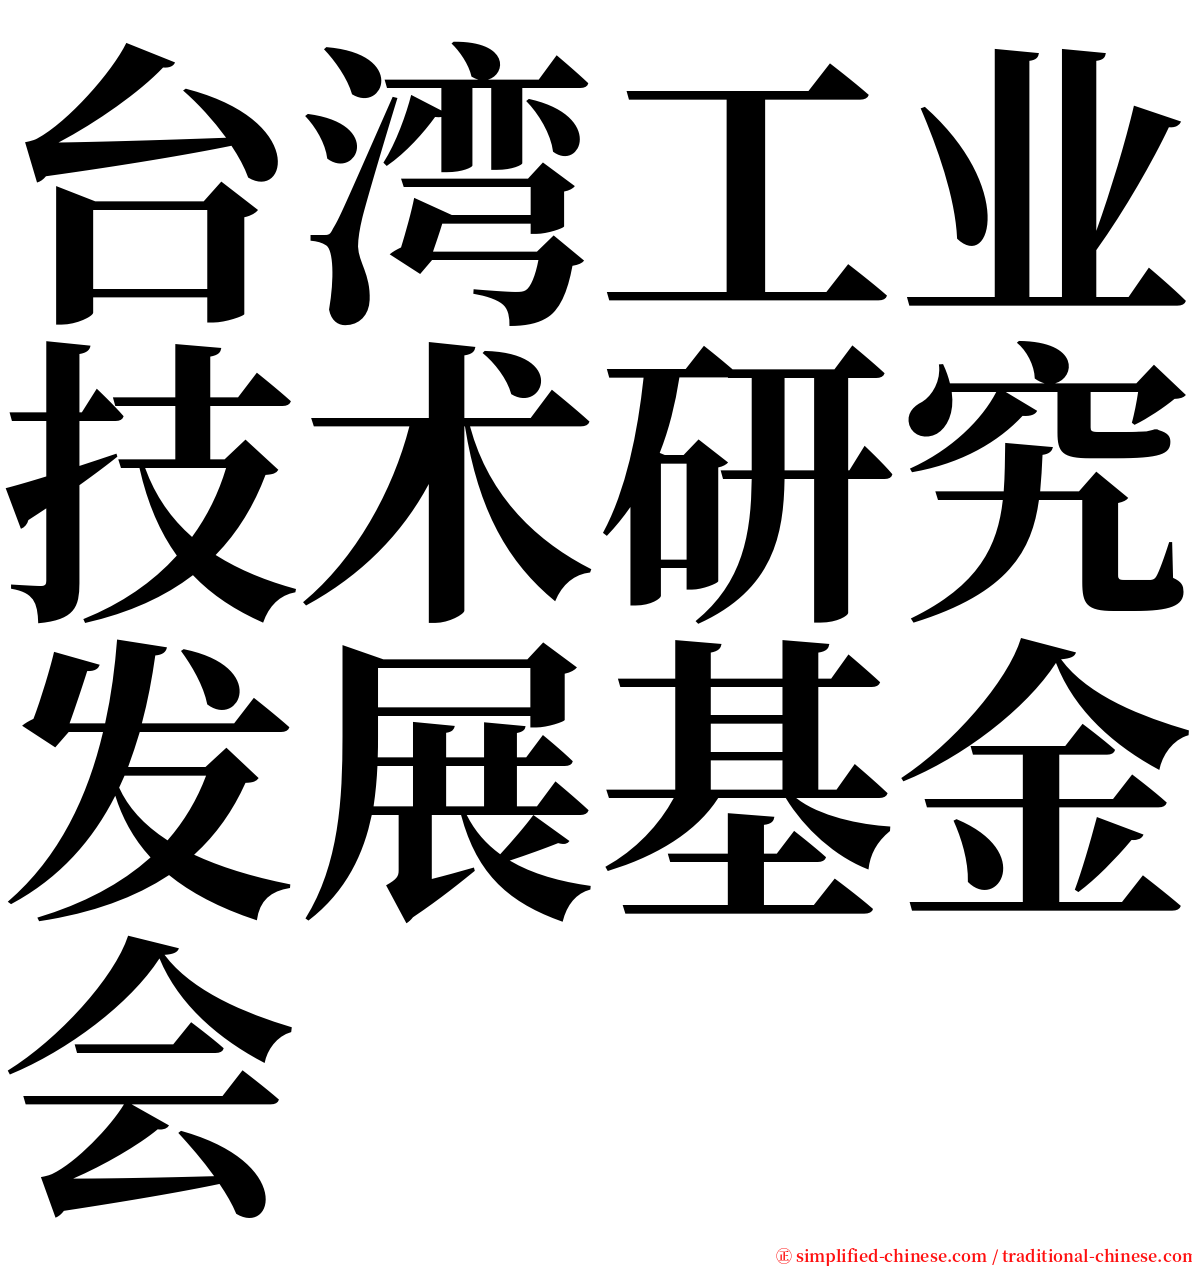 台湾工业技术研究发展基金会 serif font